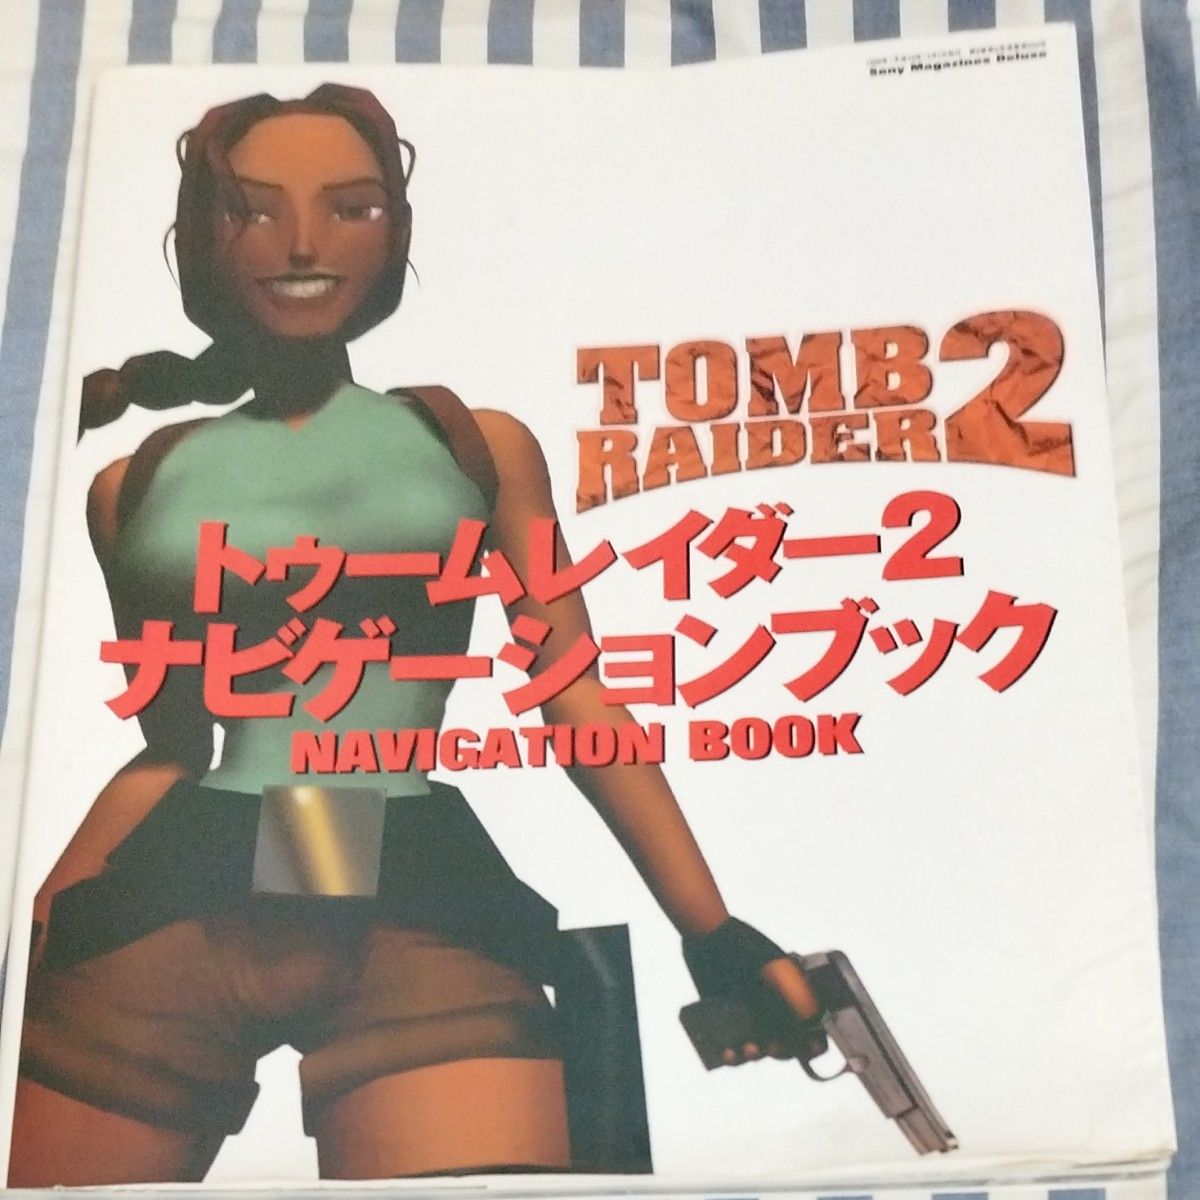 トゥームレイダー２ナビゲーションブック／ソニーマガジンズ PS PS1 プレイステーション ゲーム攻略本 レトロゲーム